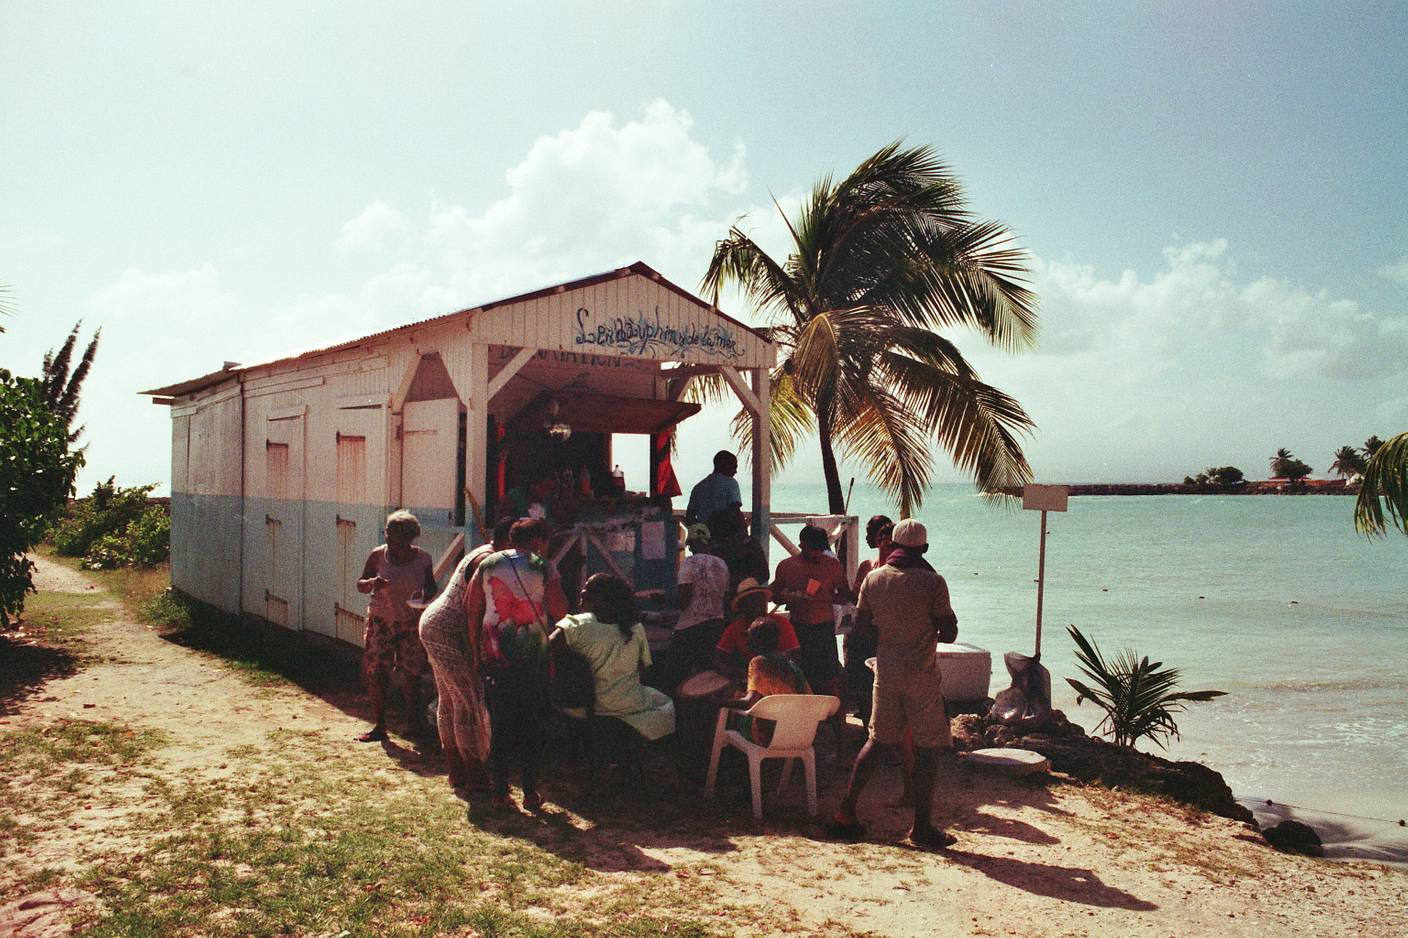 Eine Lomowall in Guadeloupe